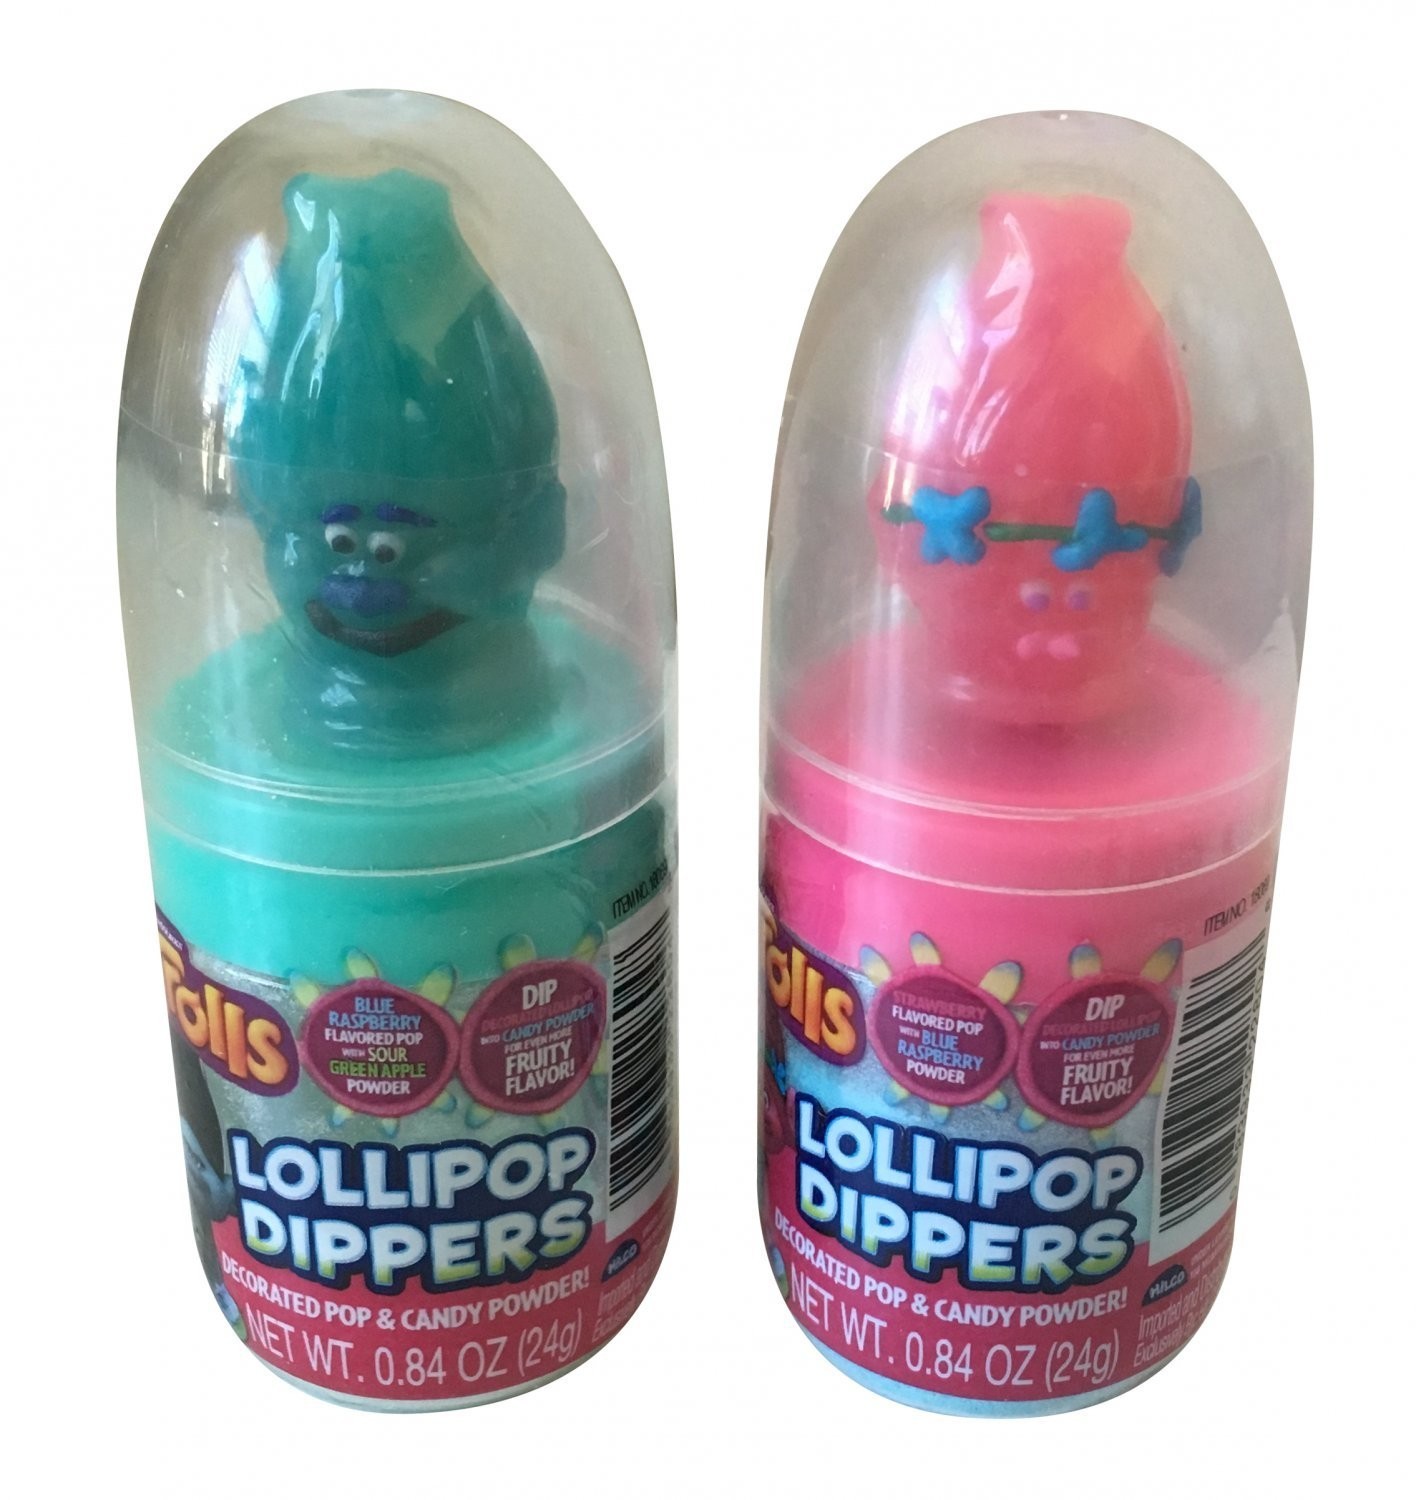  Trolls Lollipop Dipper 